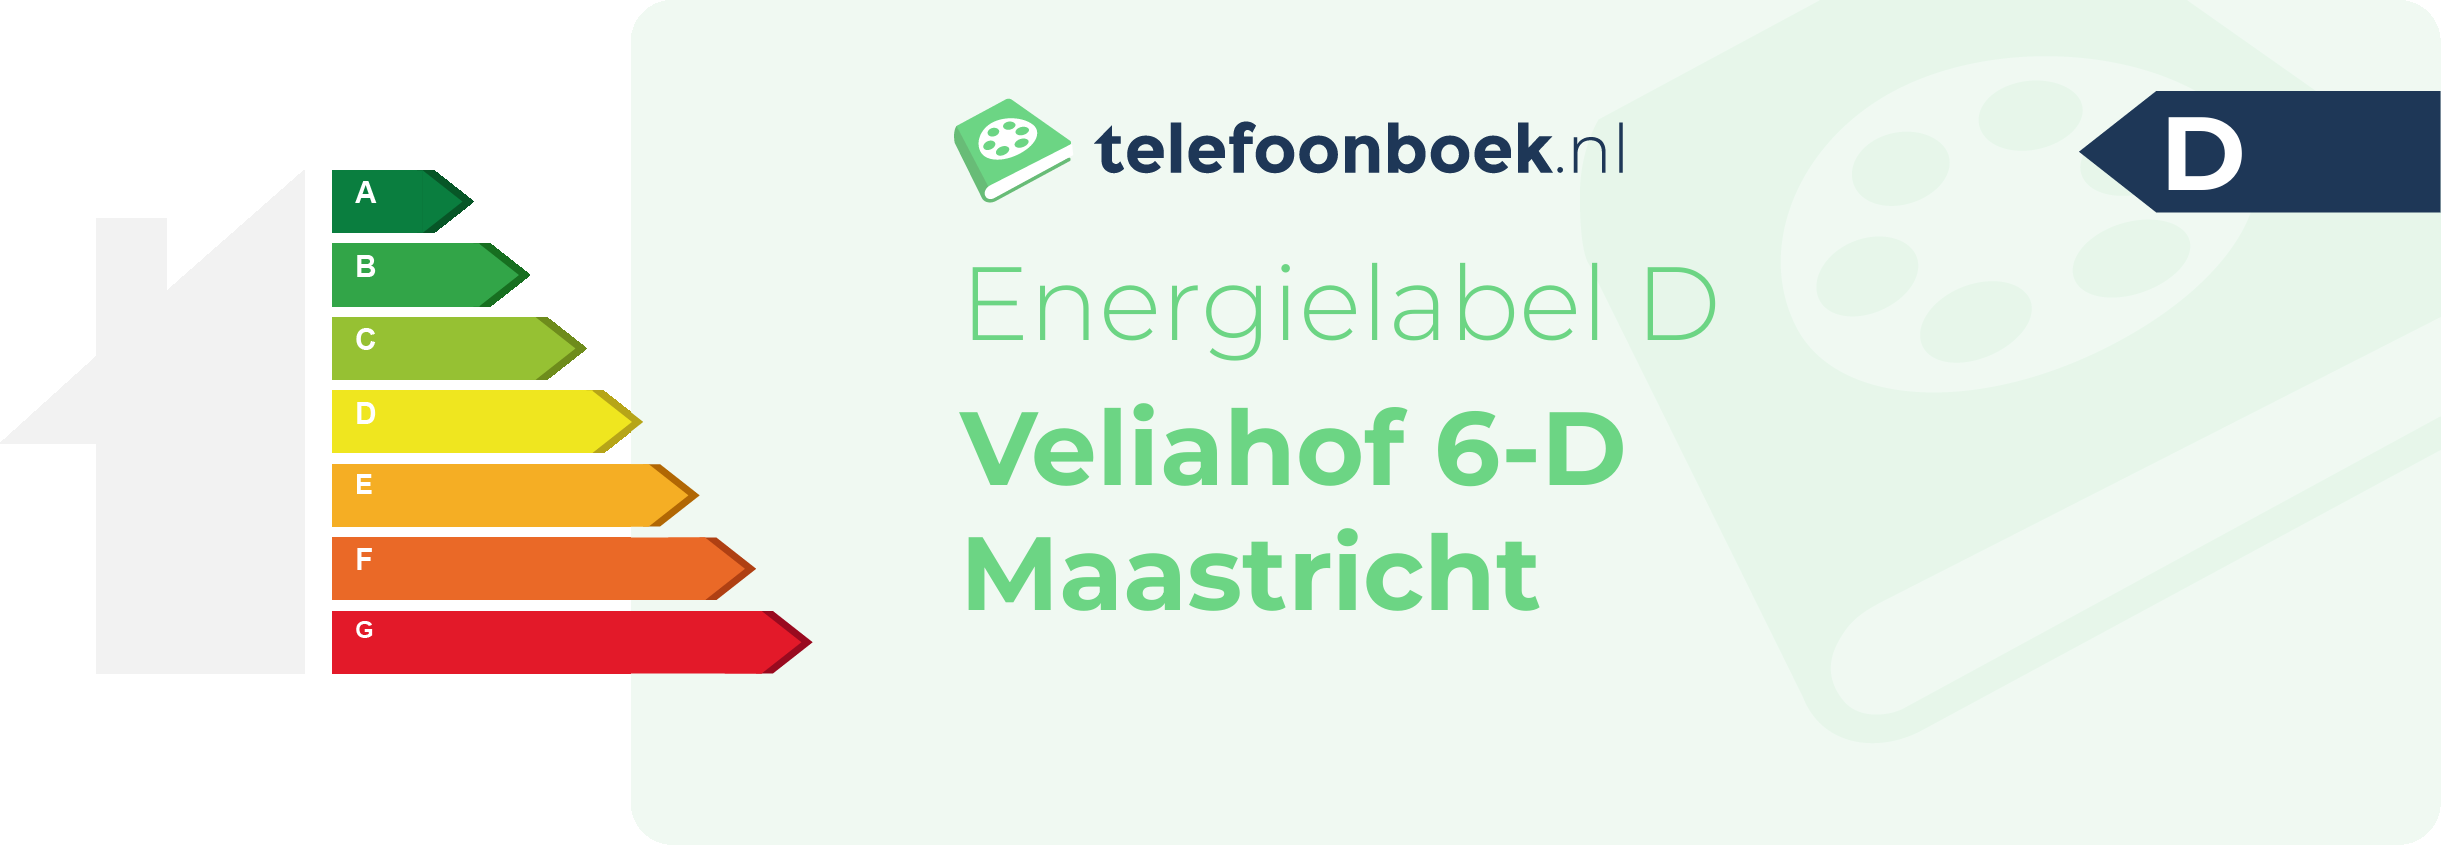 Energielabel Veliahof 6-D Maastricht